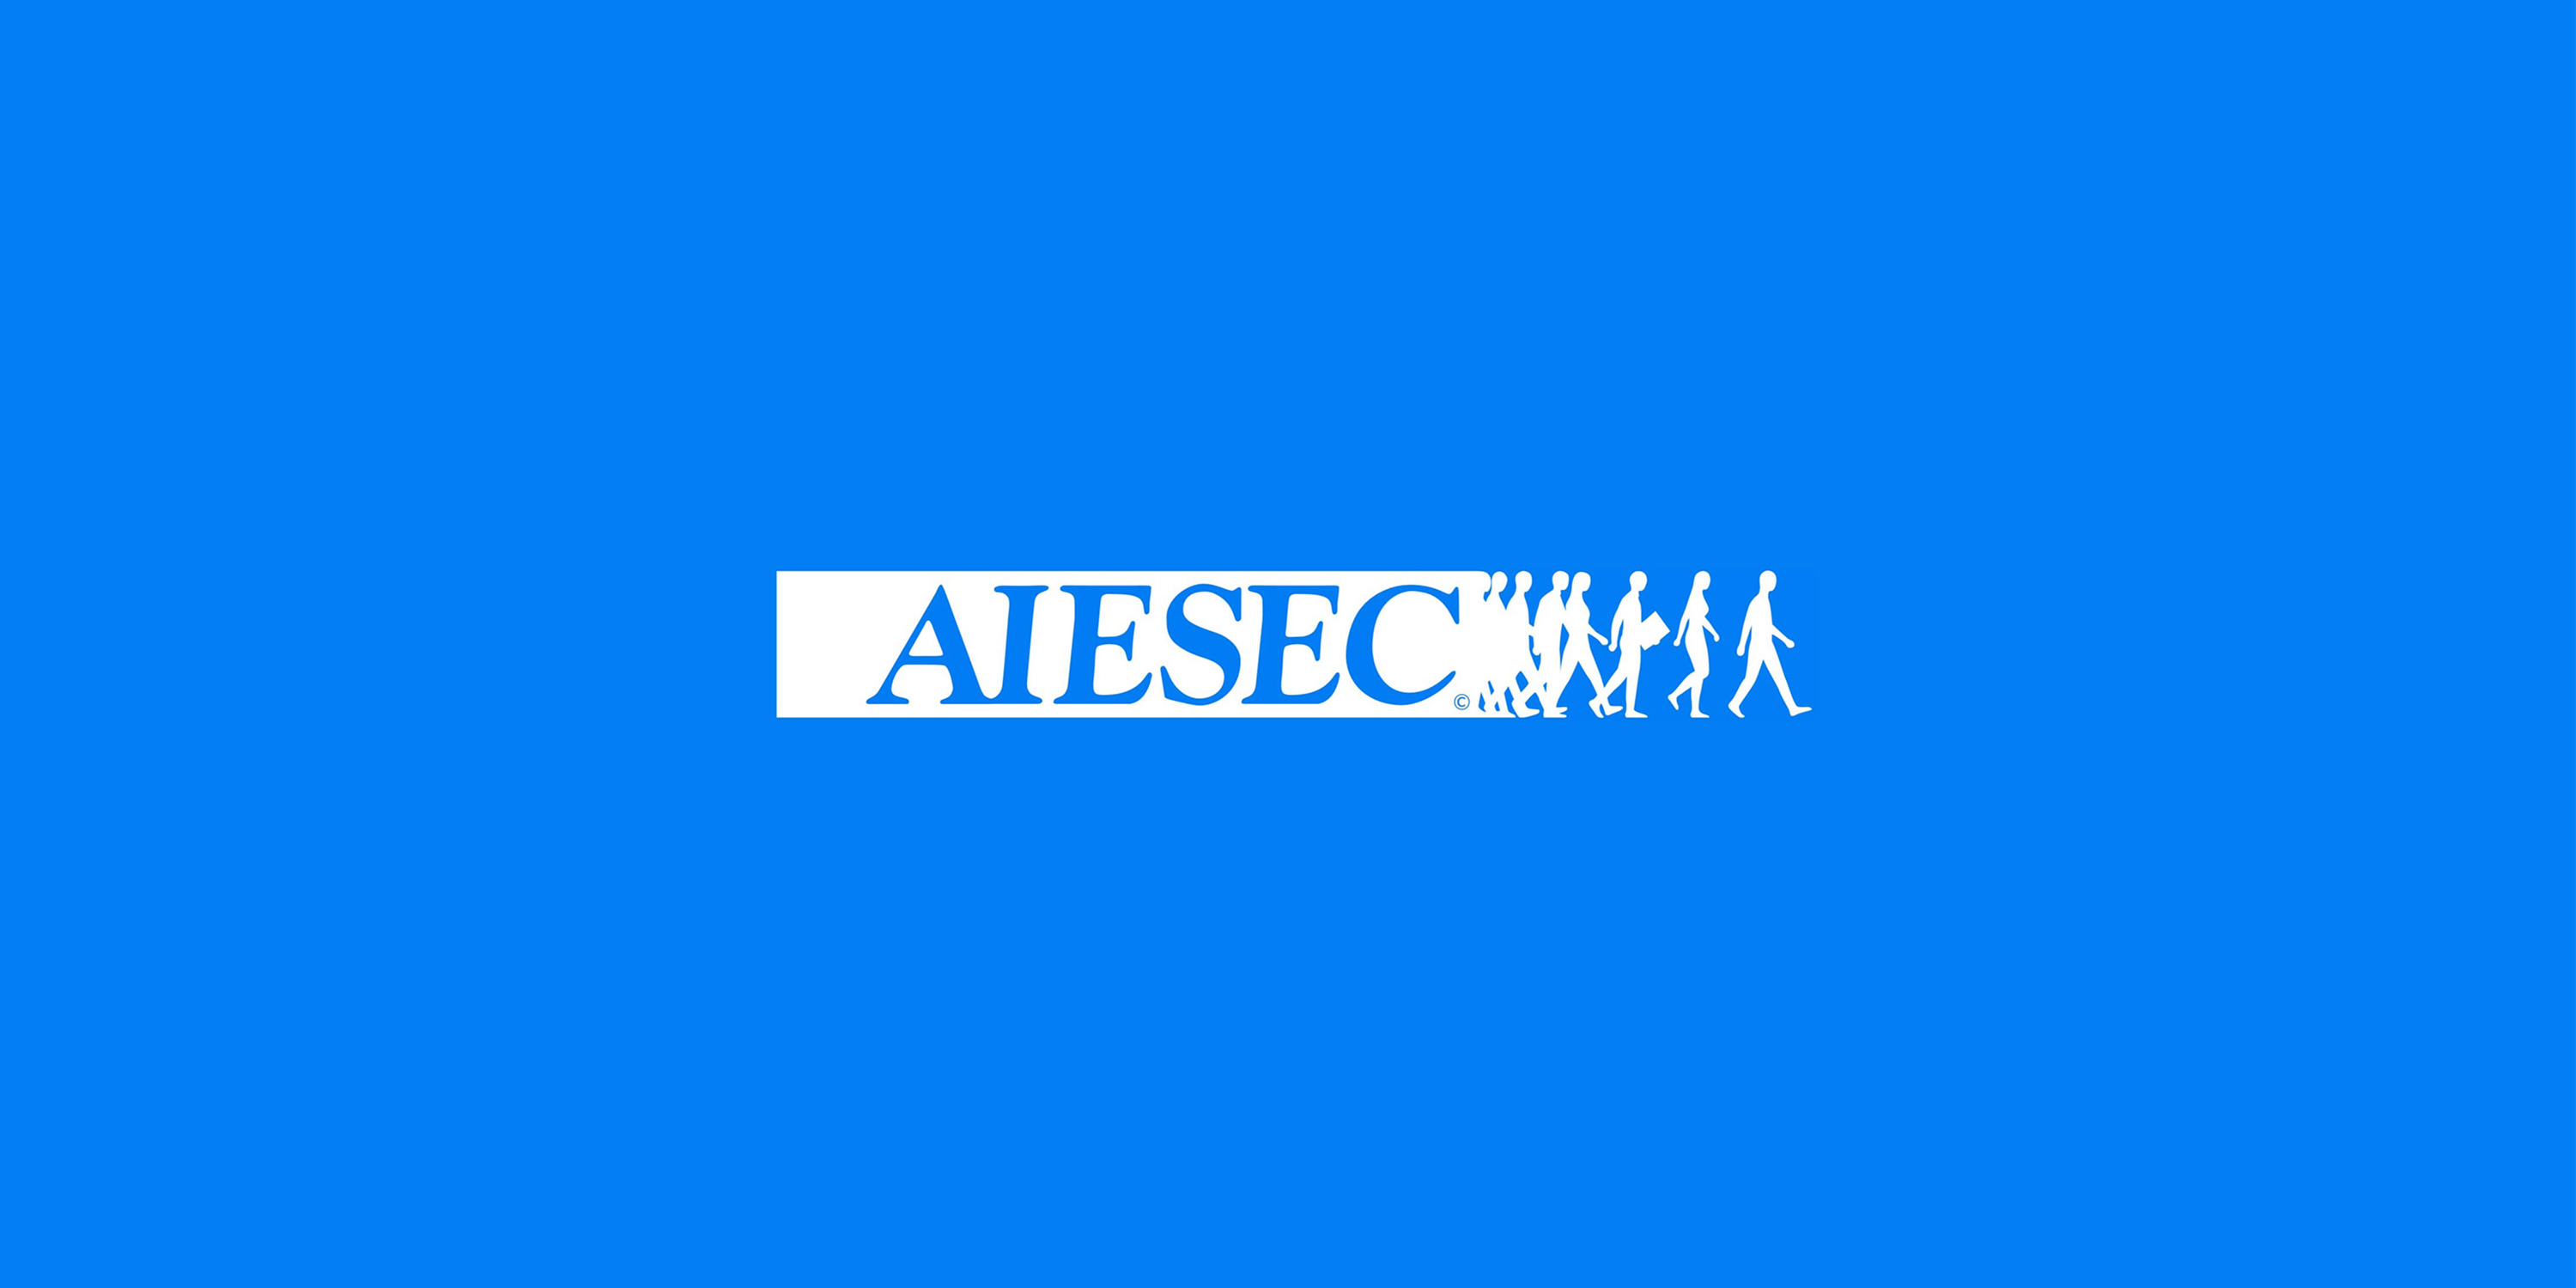 Event Branding - AIESEC International Congress :: Behance